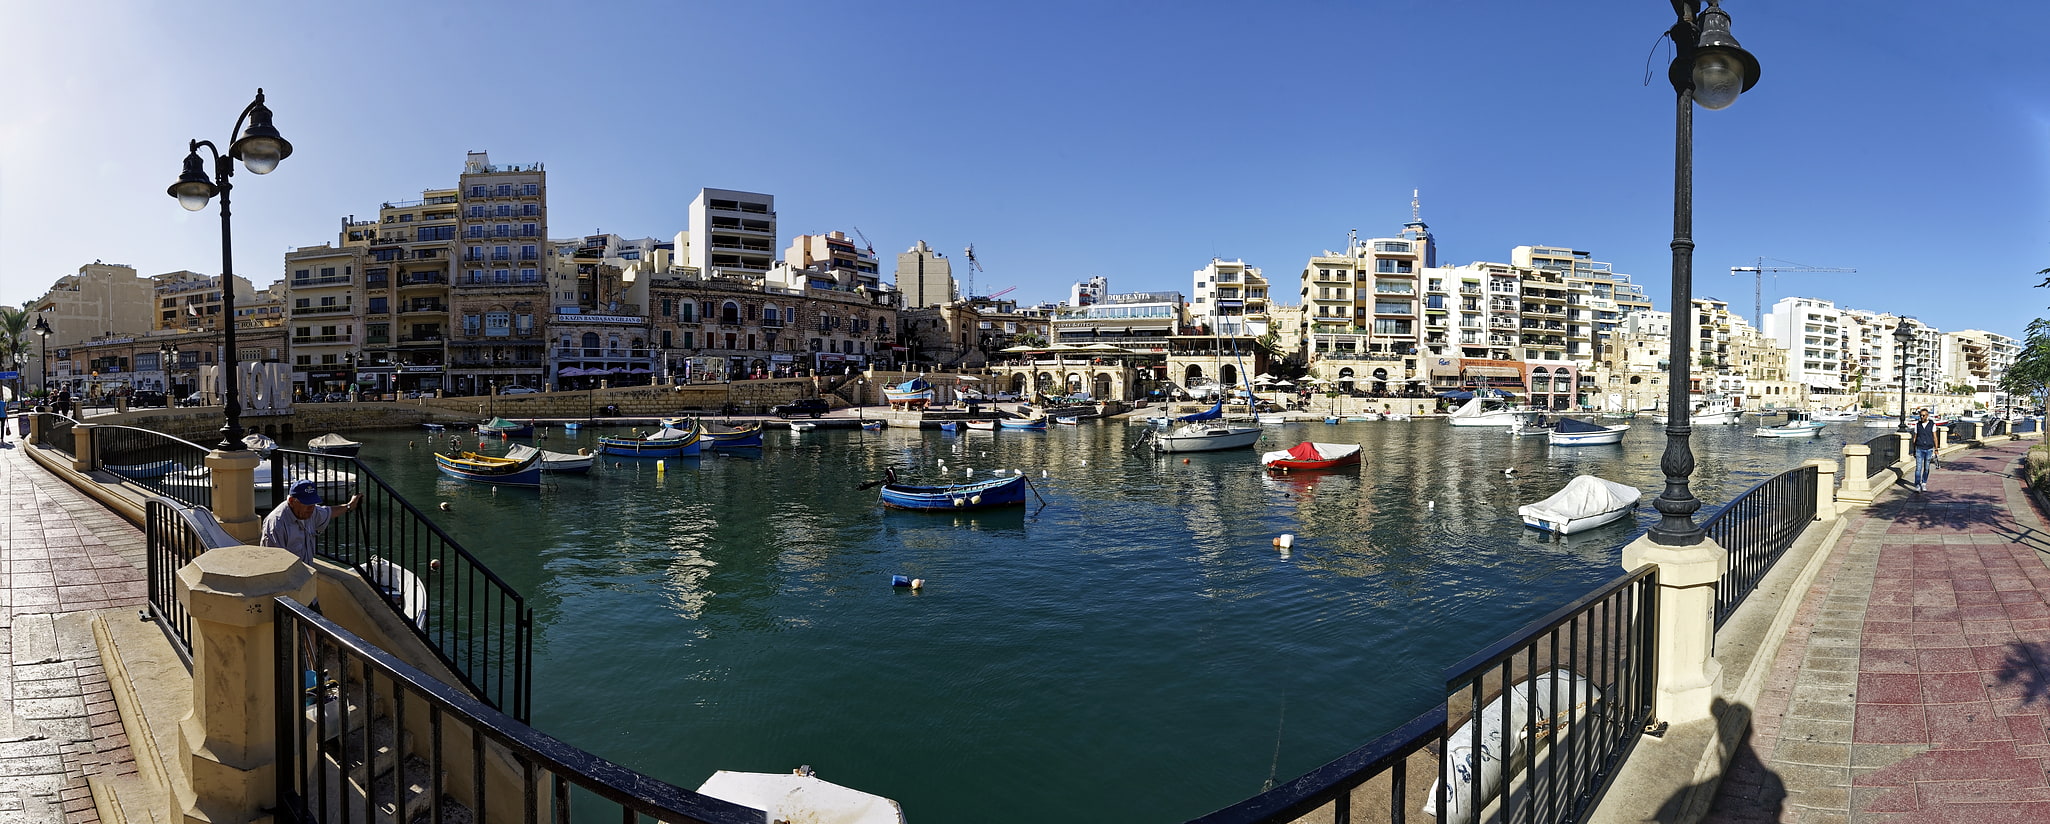 San Ġiljan, Malta